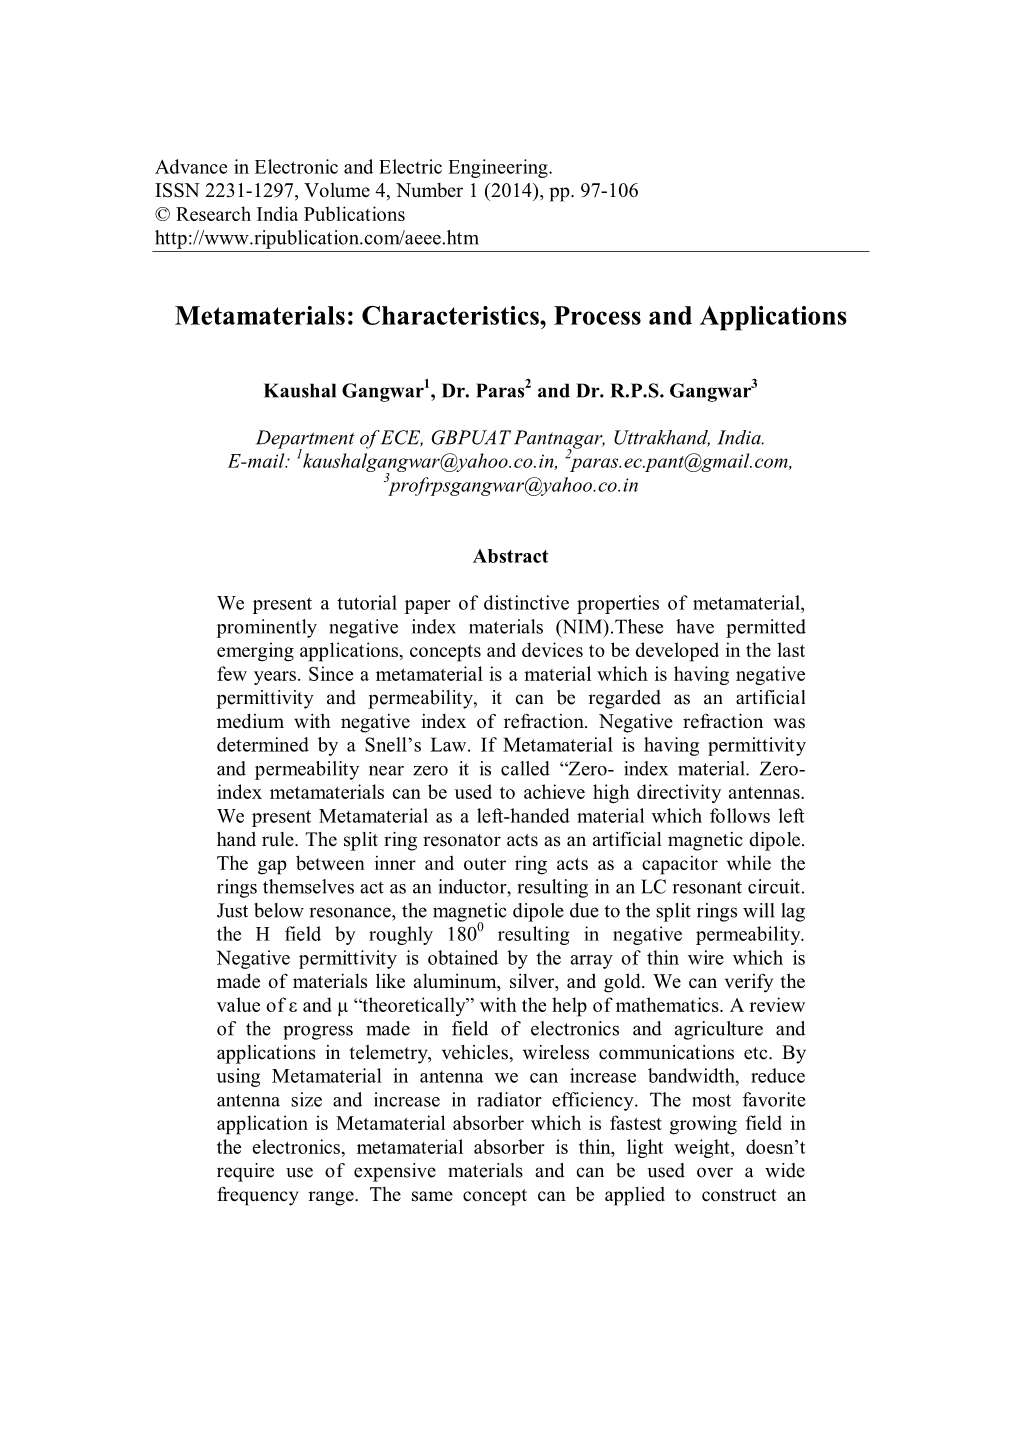 Metamaterials: Characteristics, Process and Applications